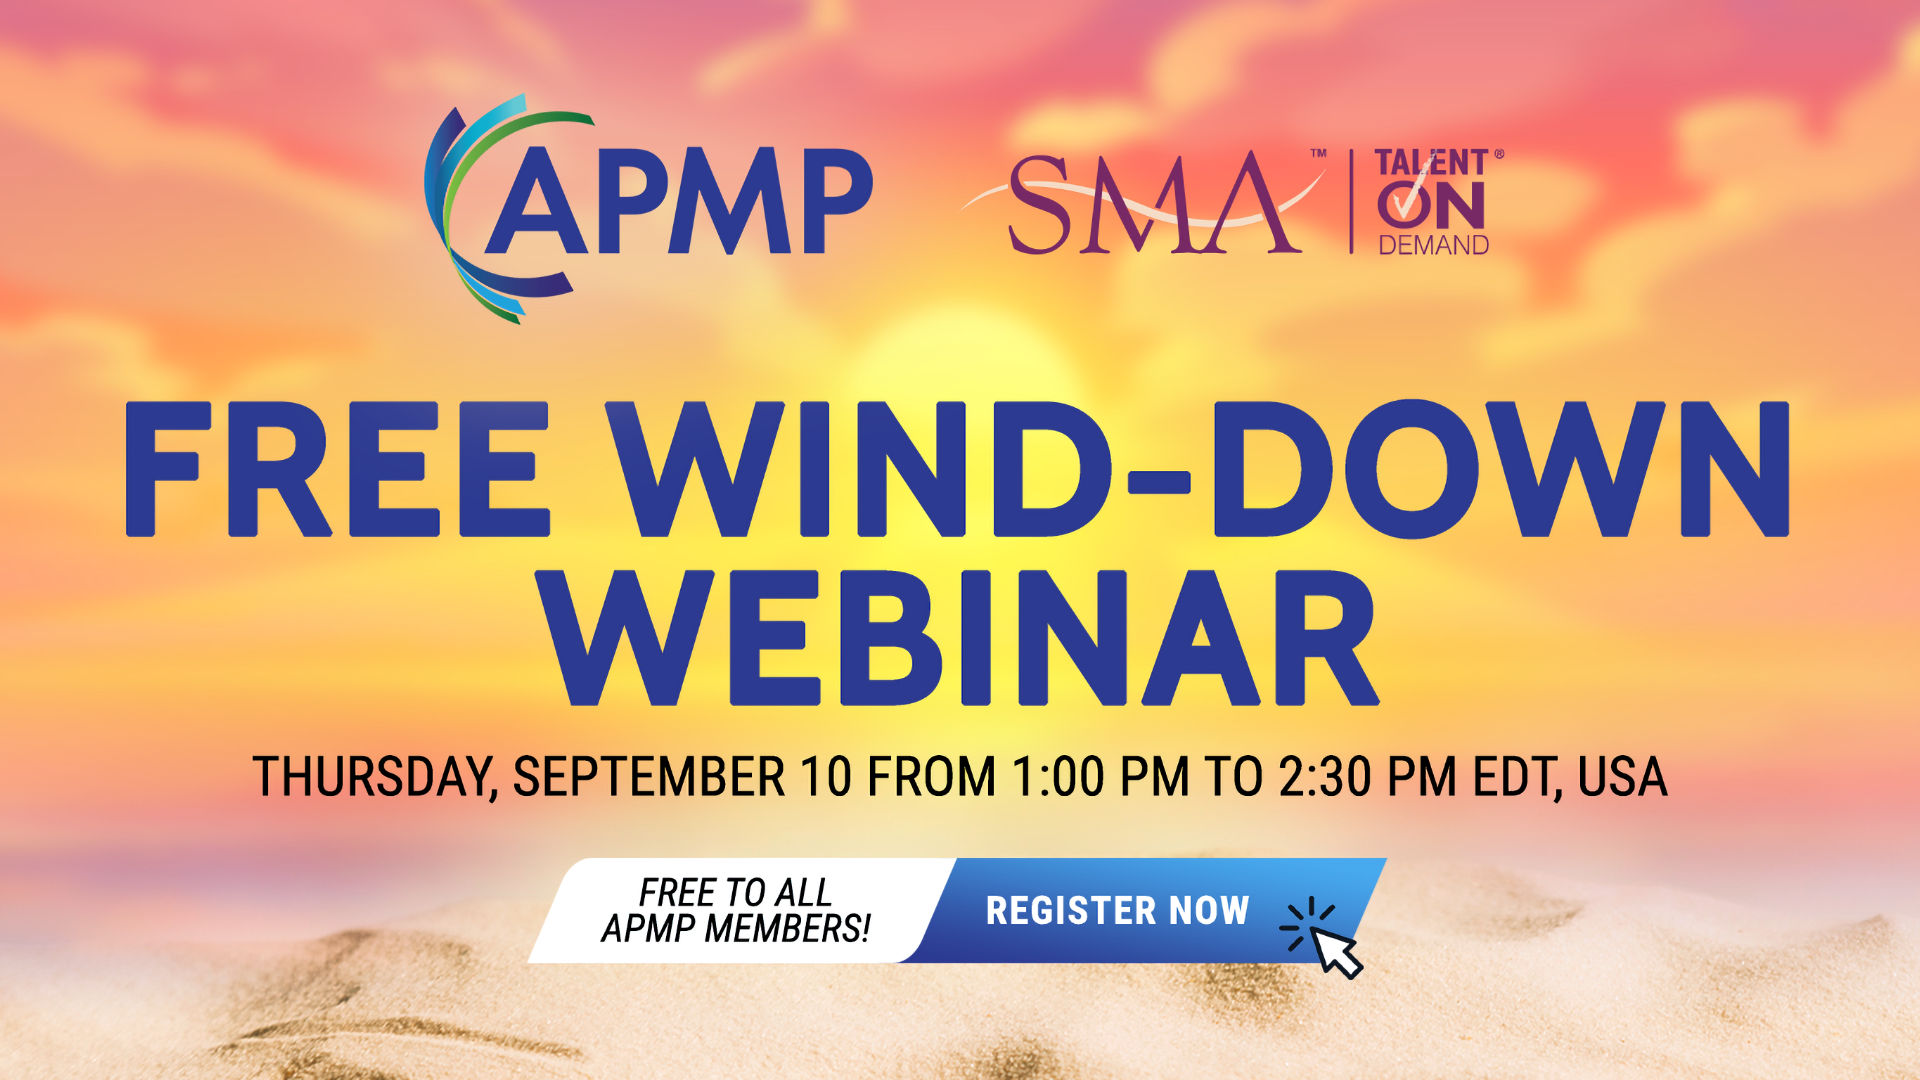 APMP Wind-Down Webinar